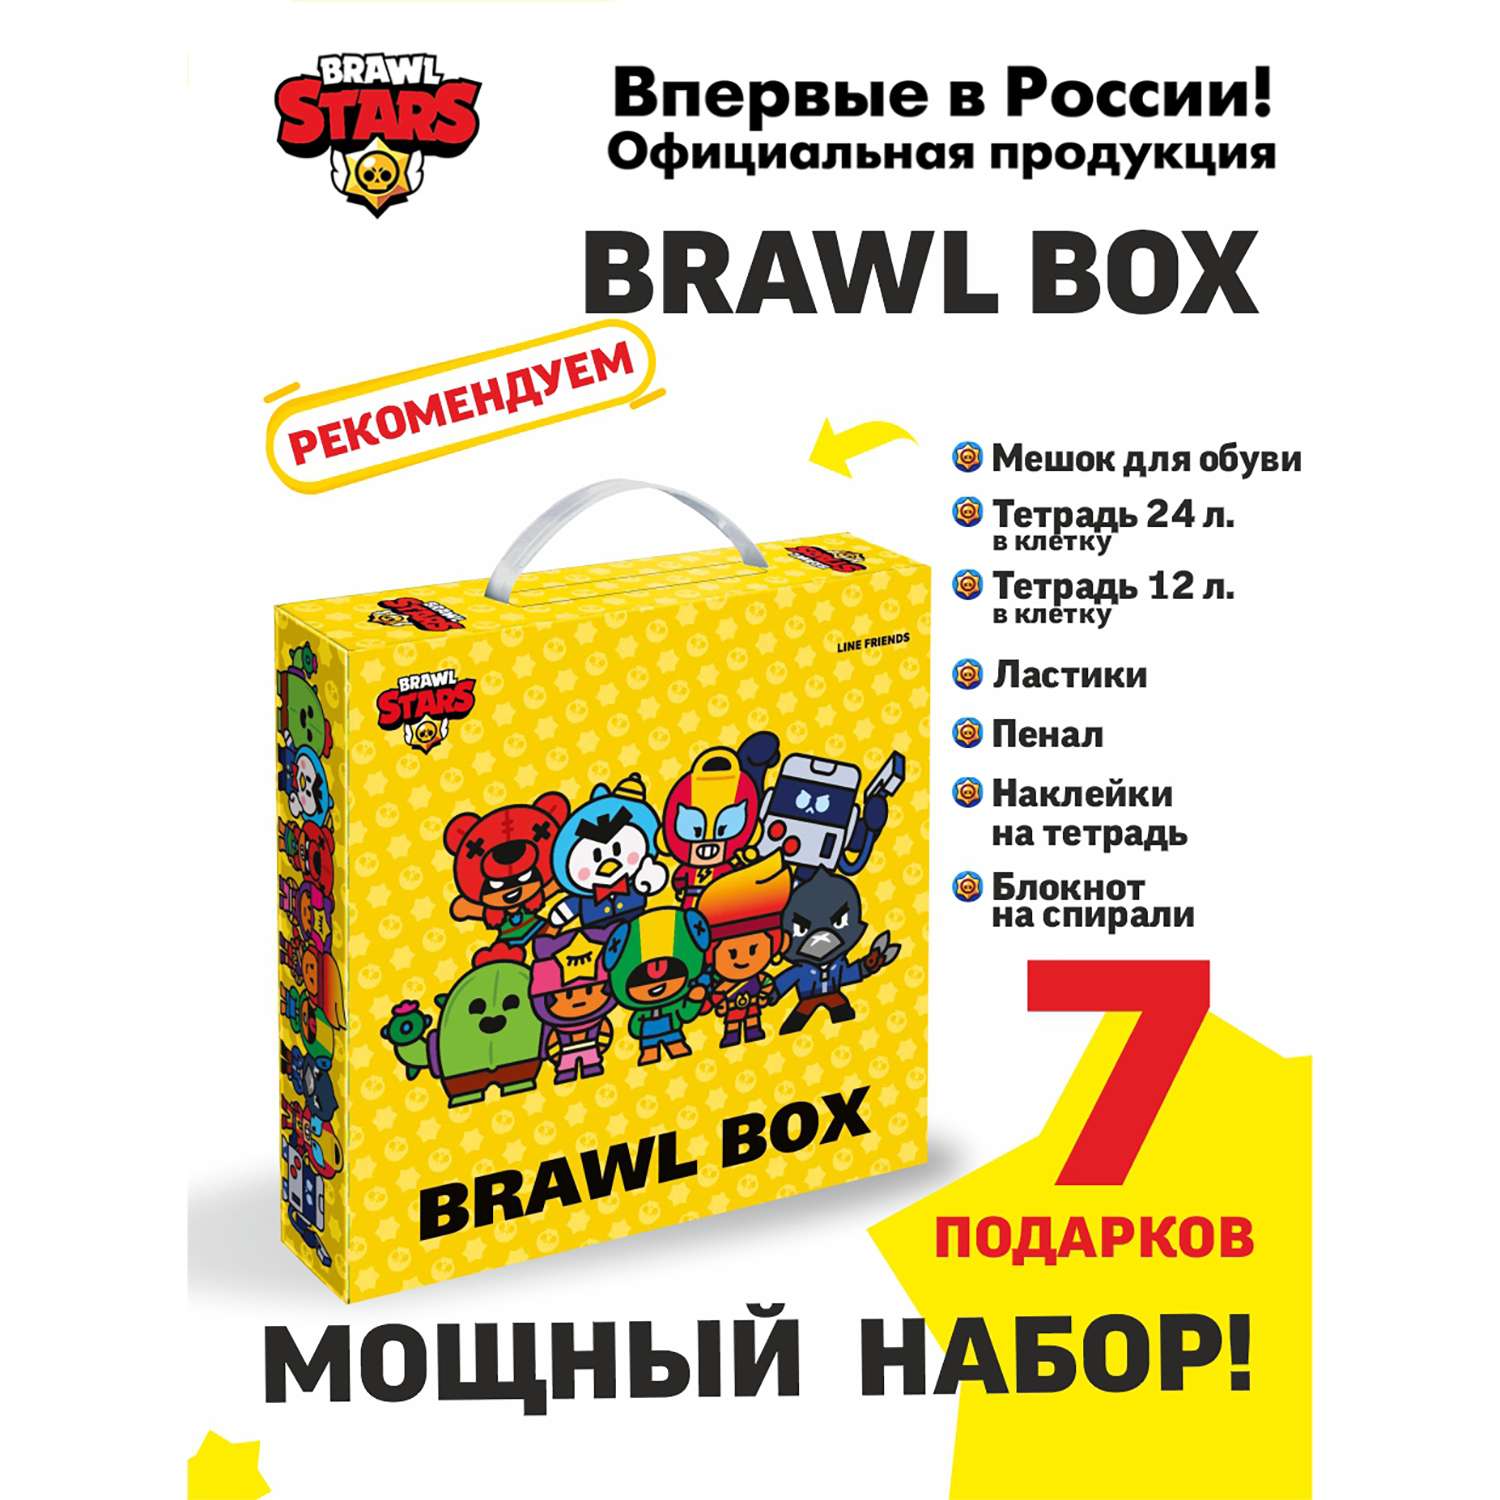 Подарочный набор BRAWL BOX BrawlStars канцелярия для школы Бравл Старс Герои - фото 2